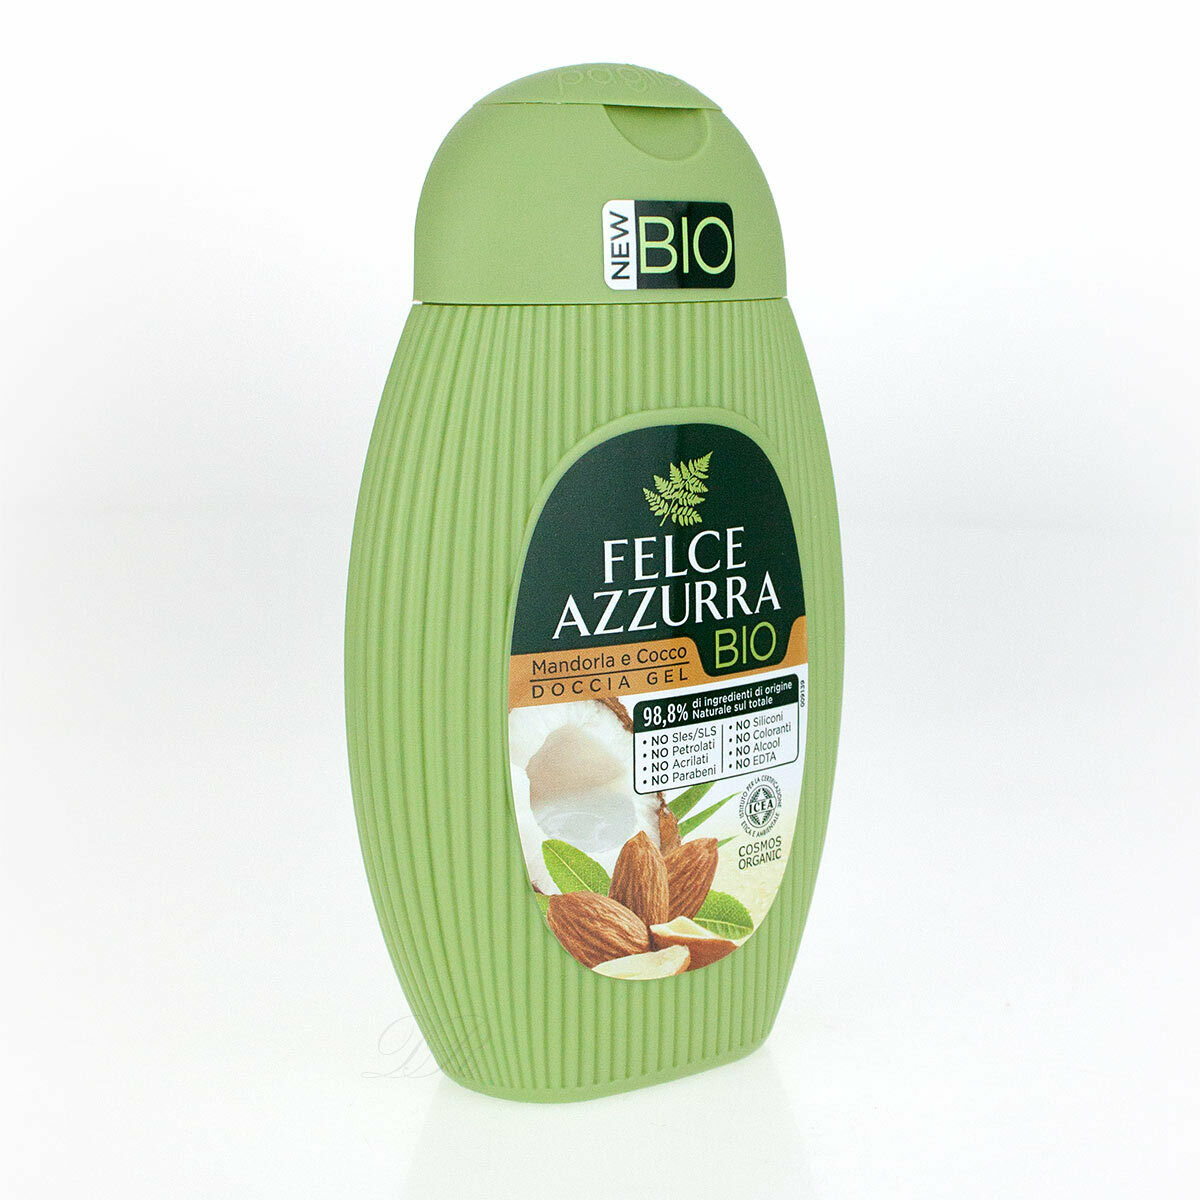 Đang tìm kiếm một loại sữa tắm hữu cơ thơm ngon và lành tính cho làn da của bạn? Hãy xem hình ảnh liên quan để khám phá sản phẩm Felce Azzurra Bio được làm từ những thành phần tự nhiên như hạnh nhân và dừa, giúp cho làn da của bạn được nuôi dưỡng và mềm mại.